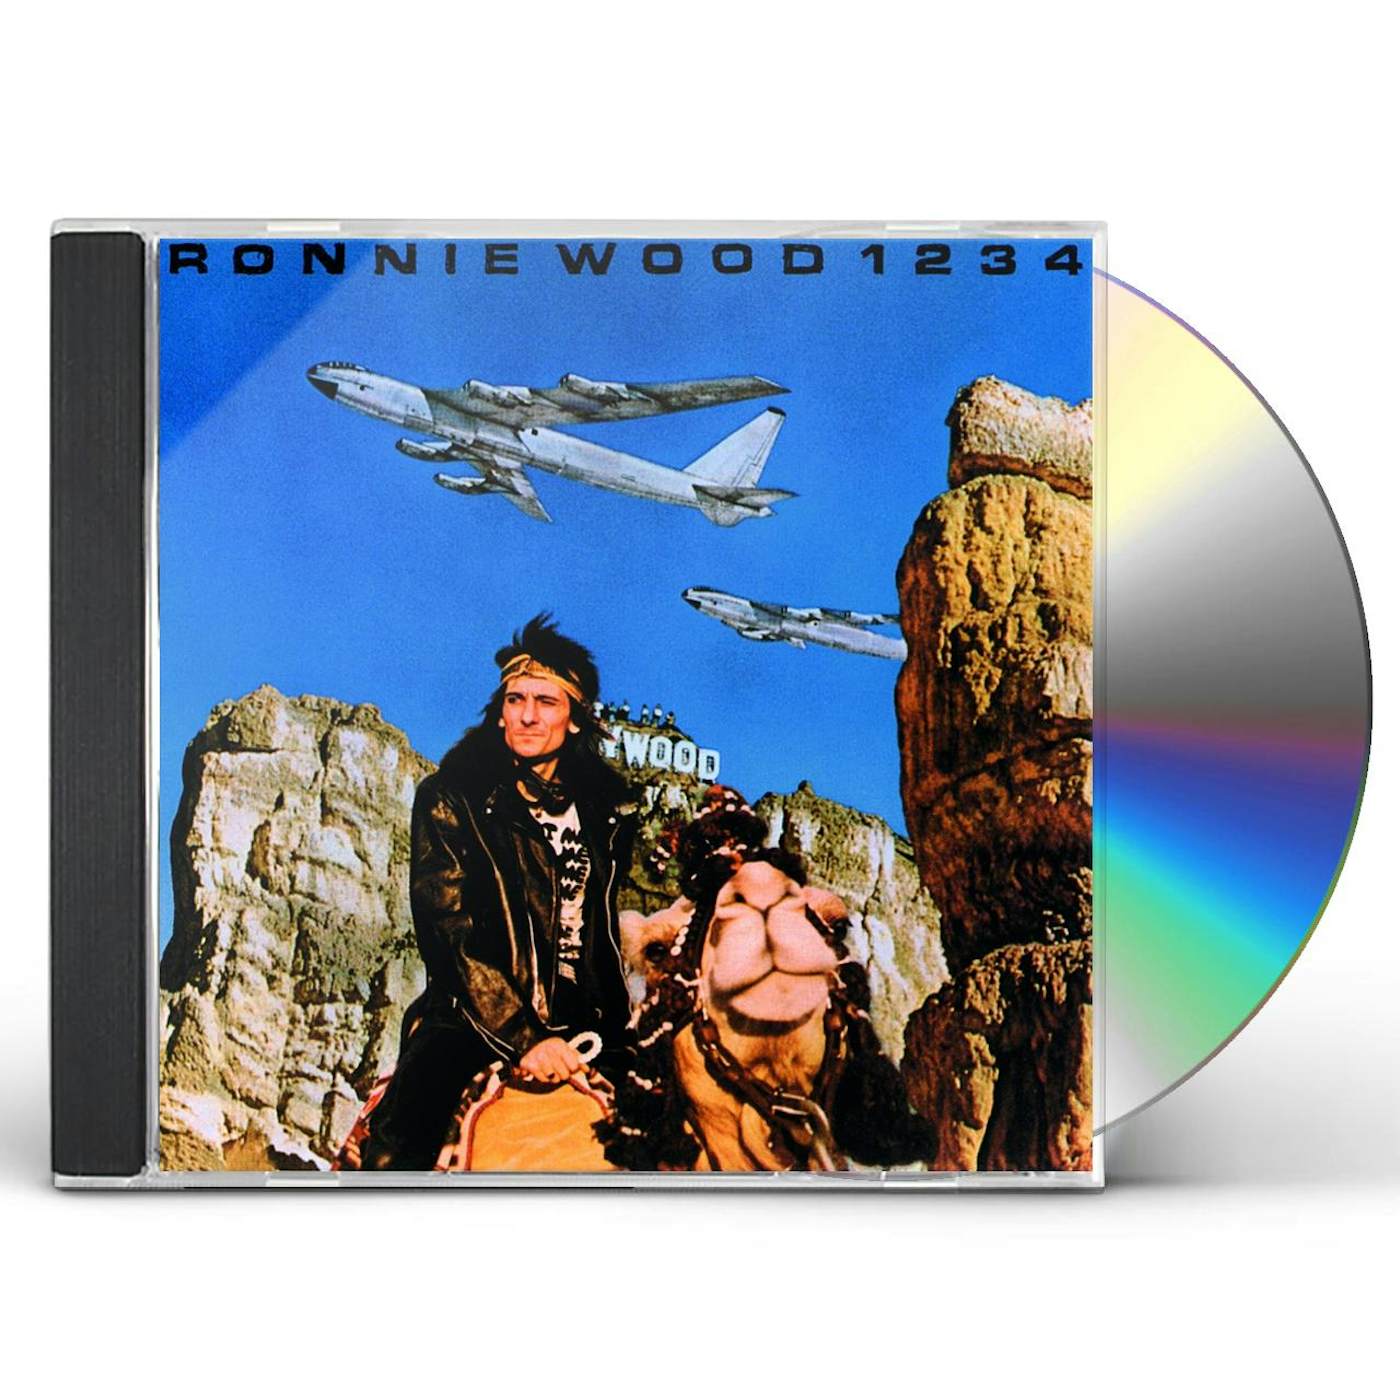 Ronnie Wood 1234 CD